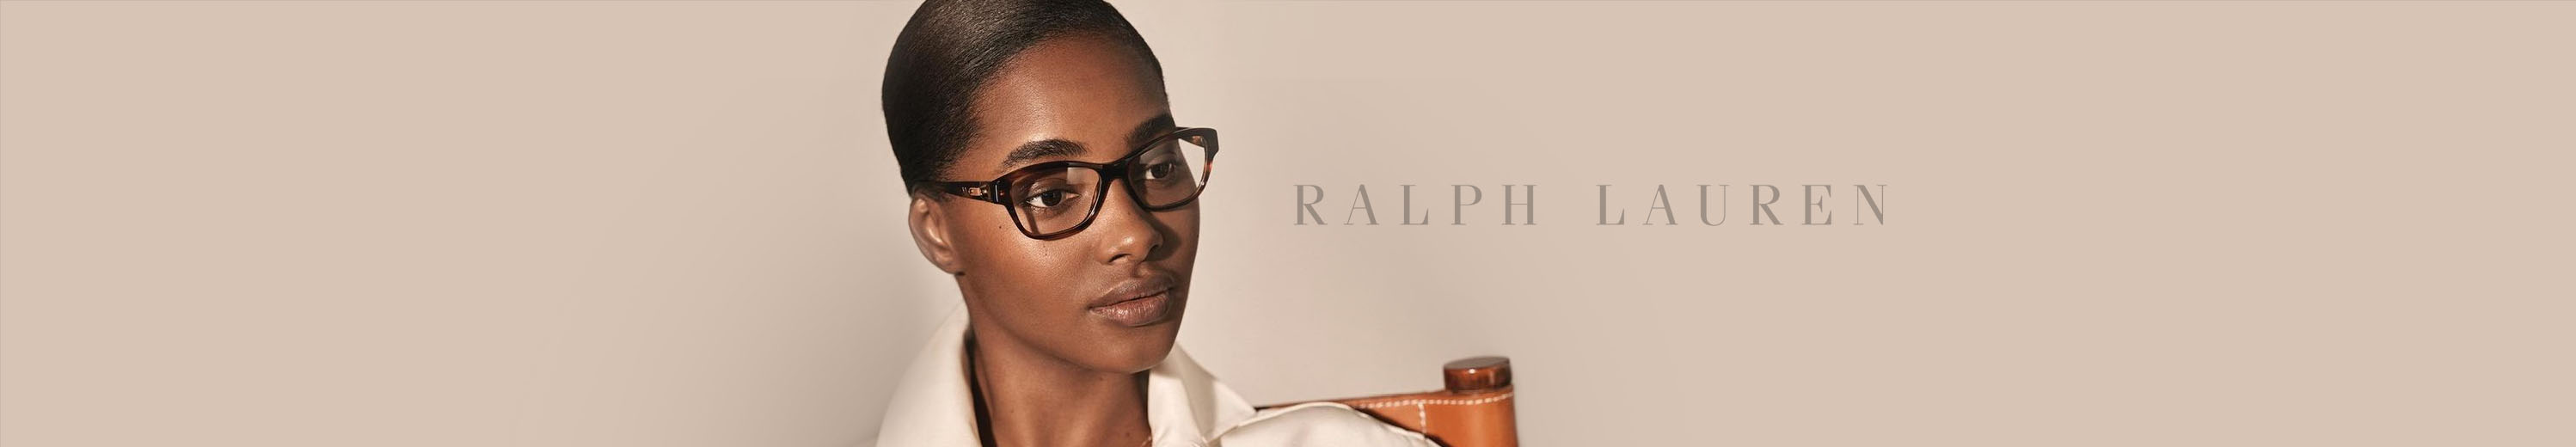 Ralph Lauren Eyeglasses